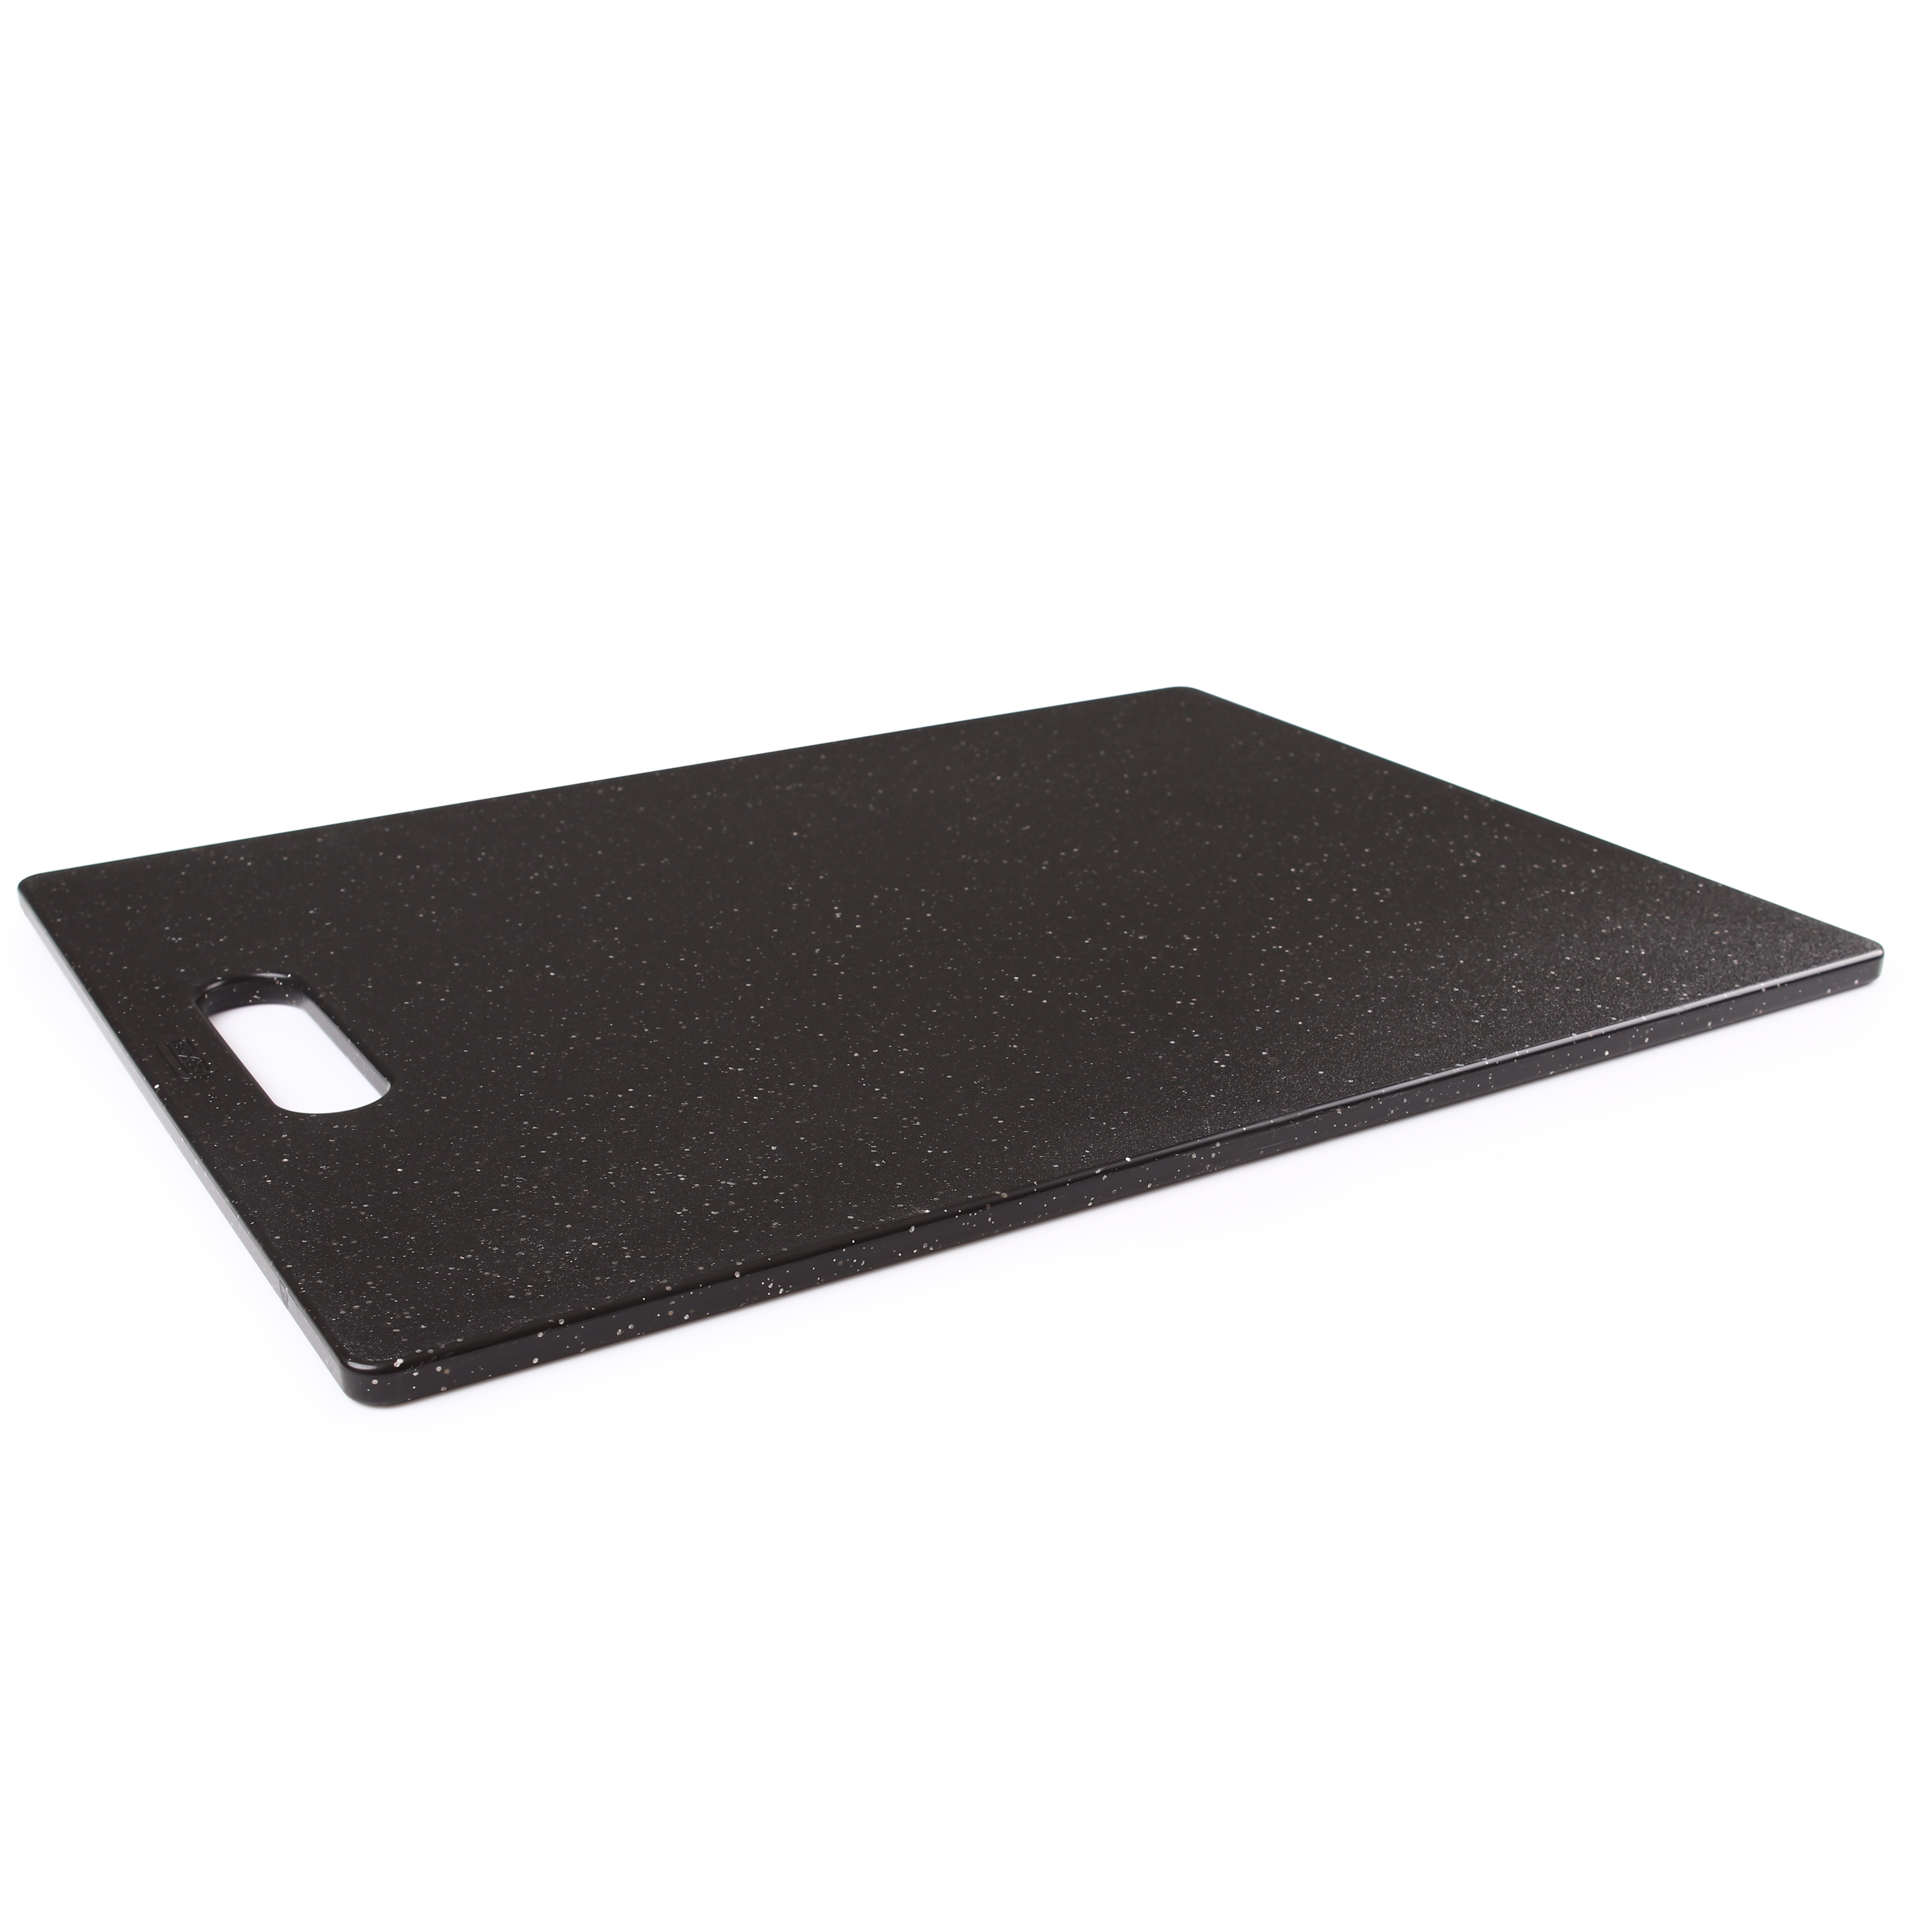 Dexas 12x18 Grippboard Cutting Board - Cutting Boards